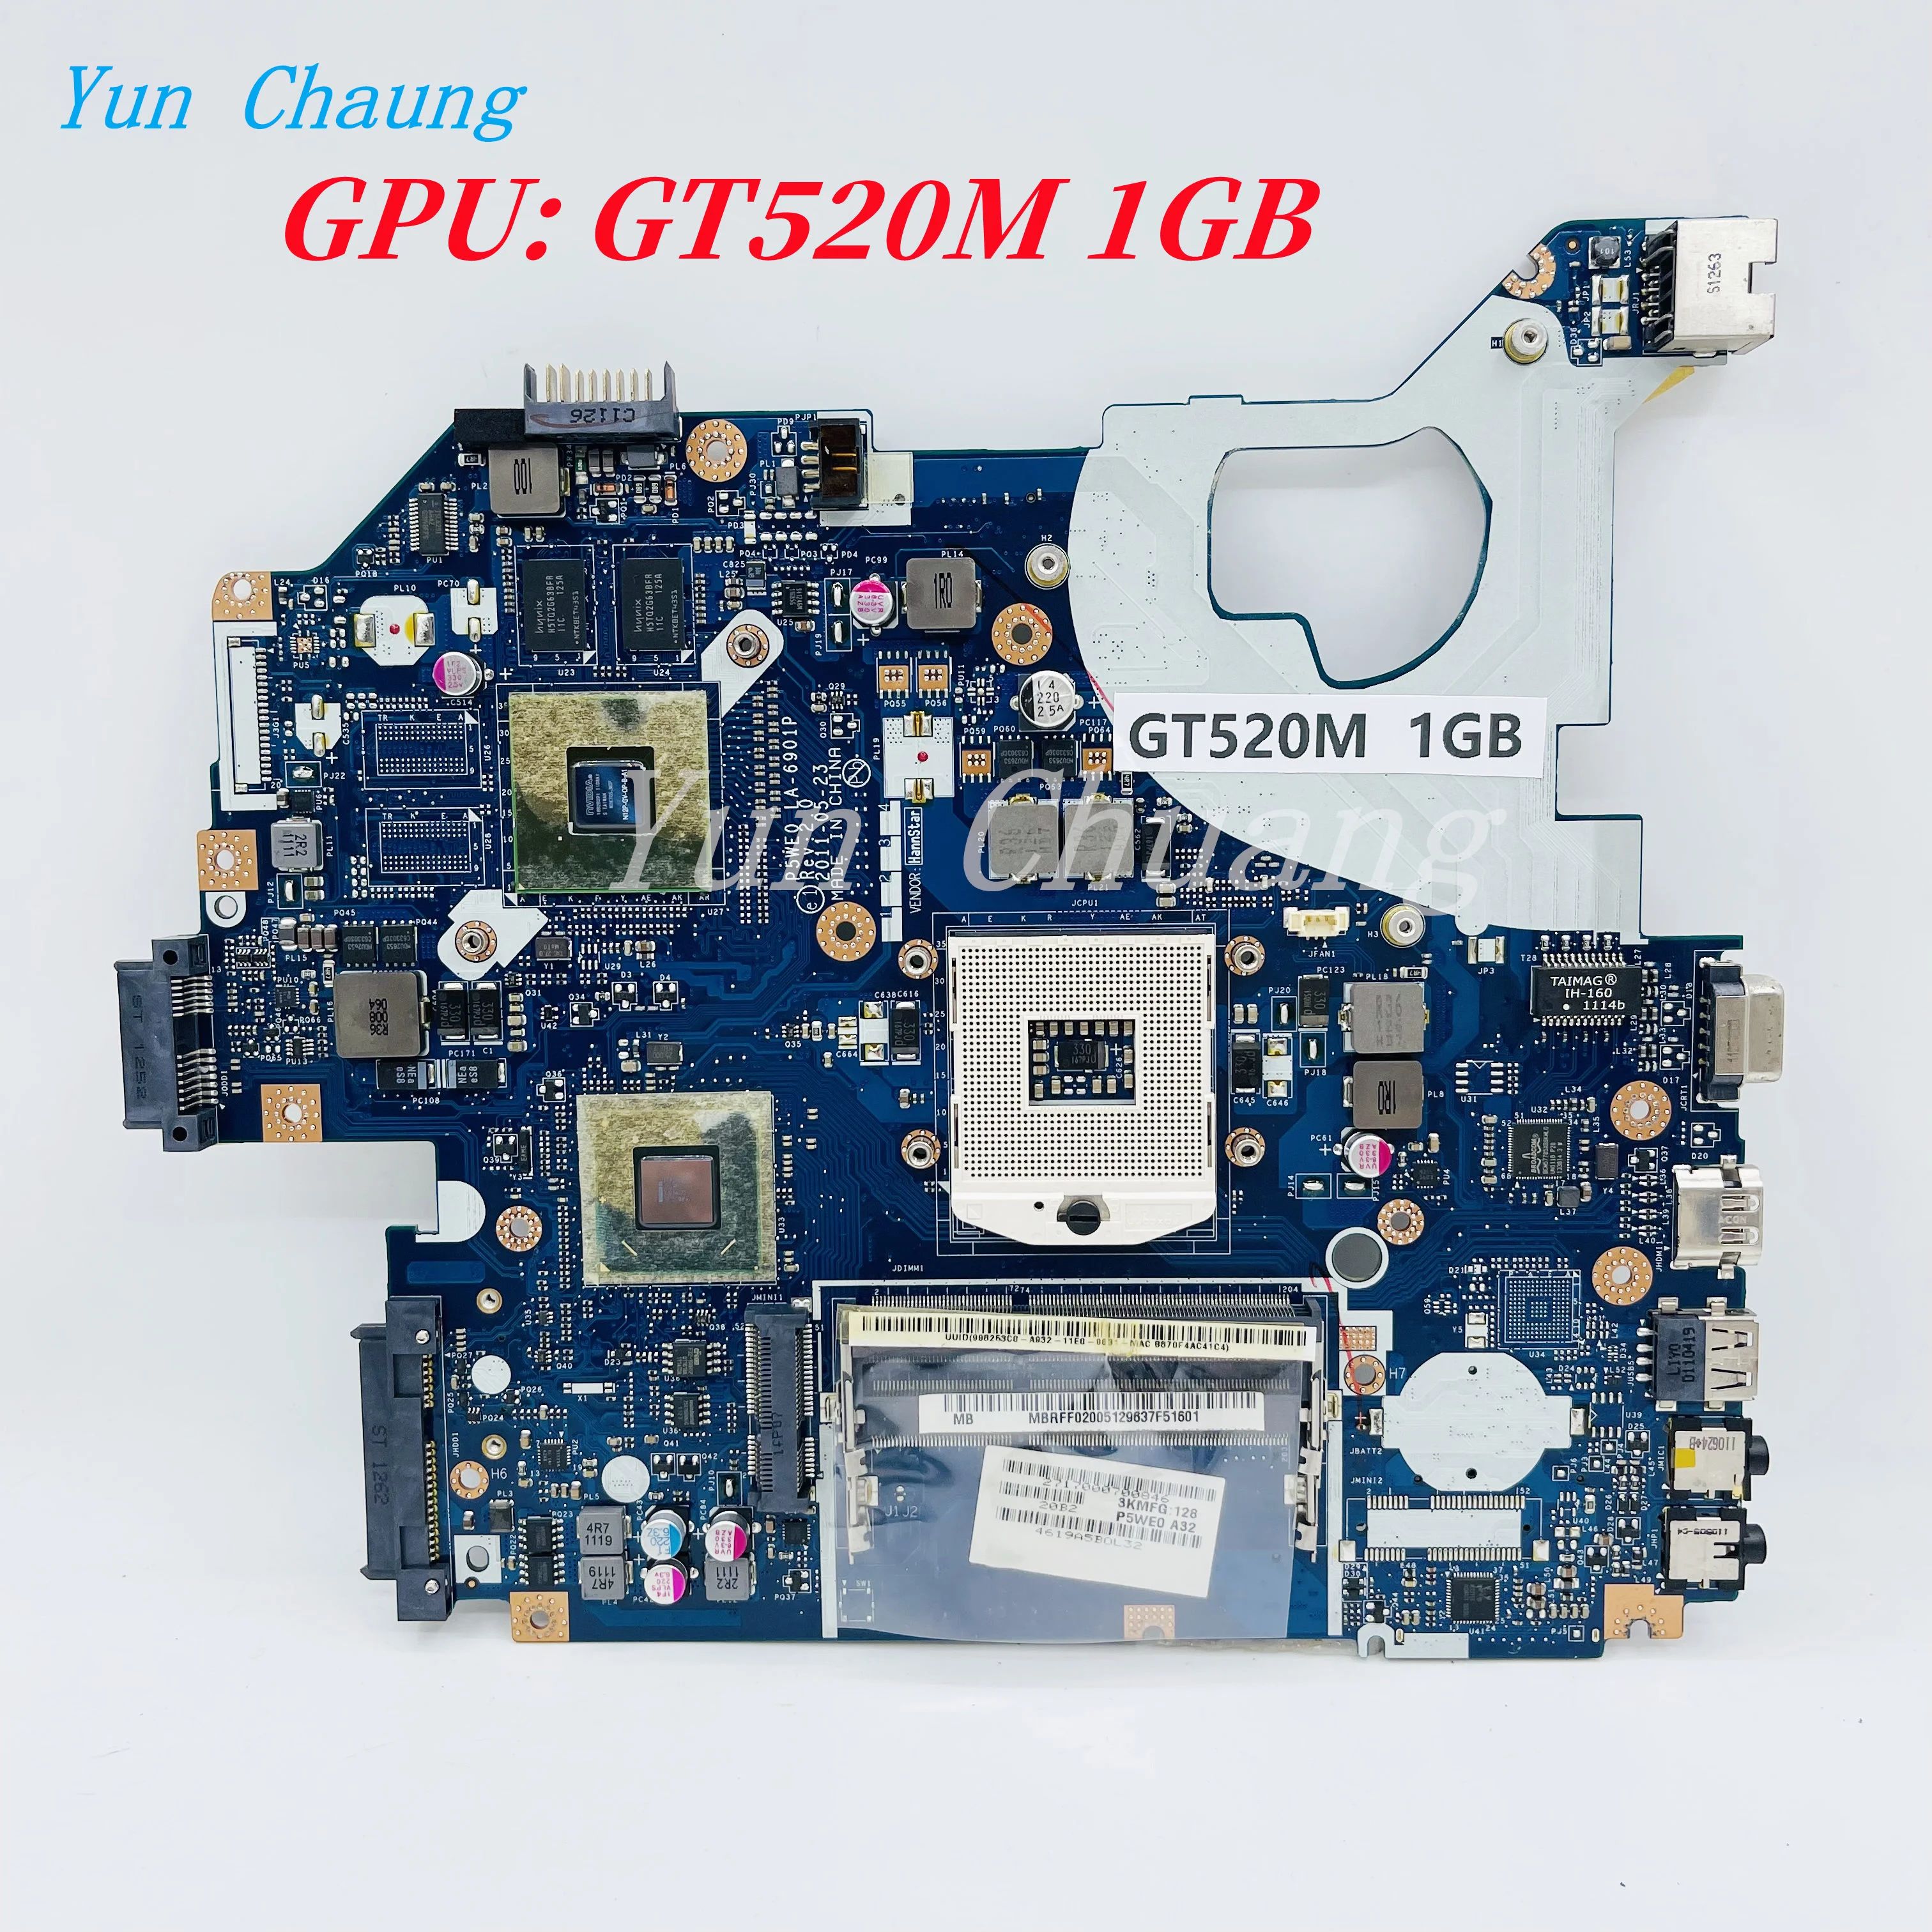 Konfiguration: GT520M 1 GB